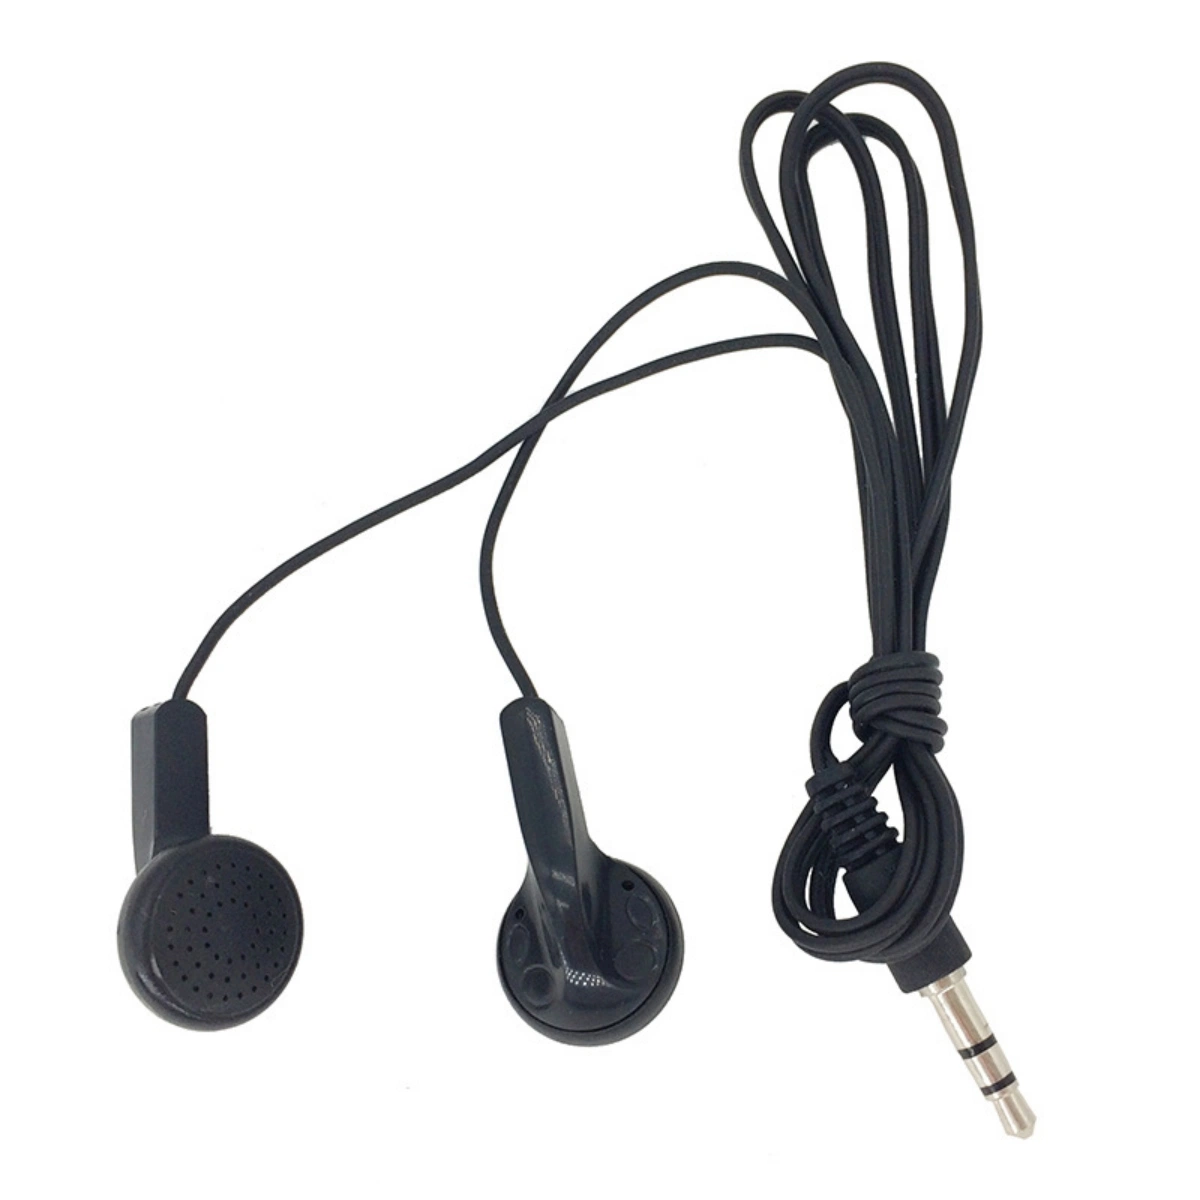 سماعات رأس MP3 داخل الأذن قابلة للاستخدام في المصنع للاستعمال مرة واحدة